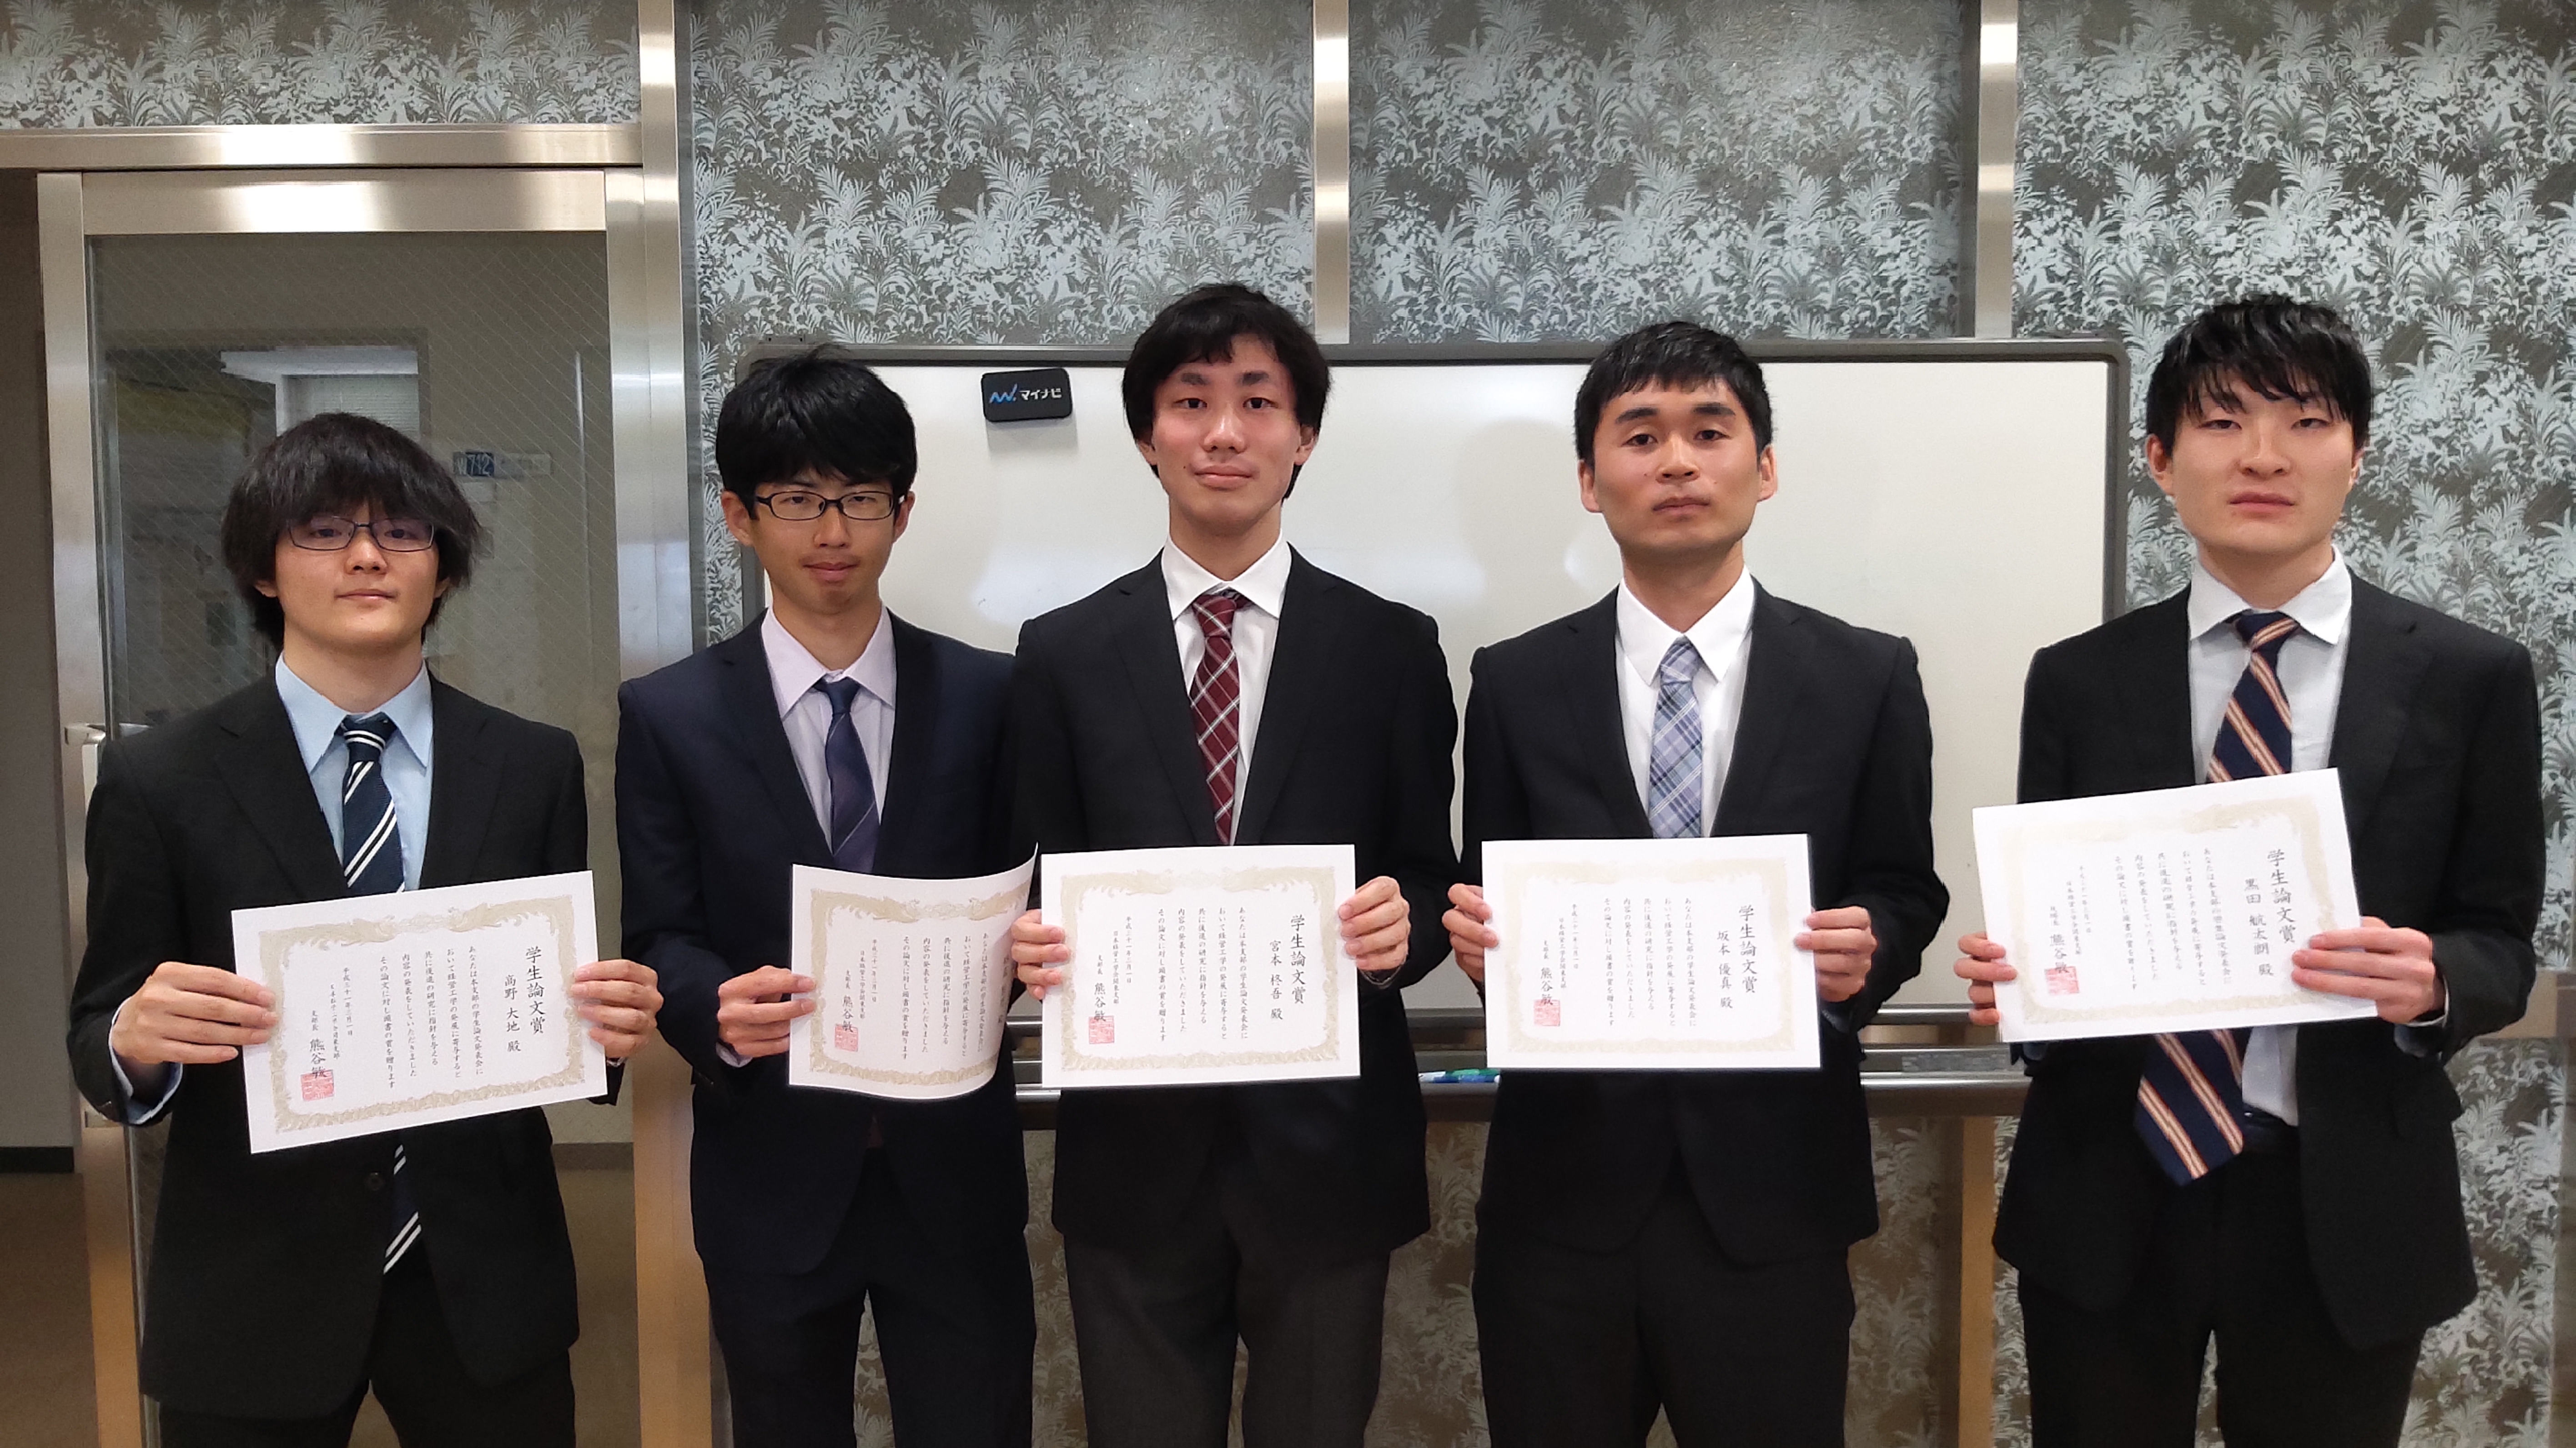 日本経営工学会 関東支部 2018年度学生論文発表会で学生論文賞を本学学生が受賞